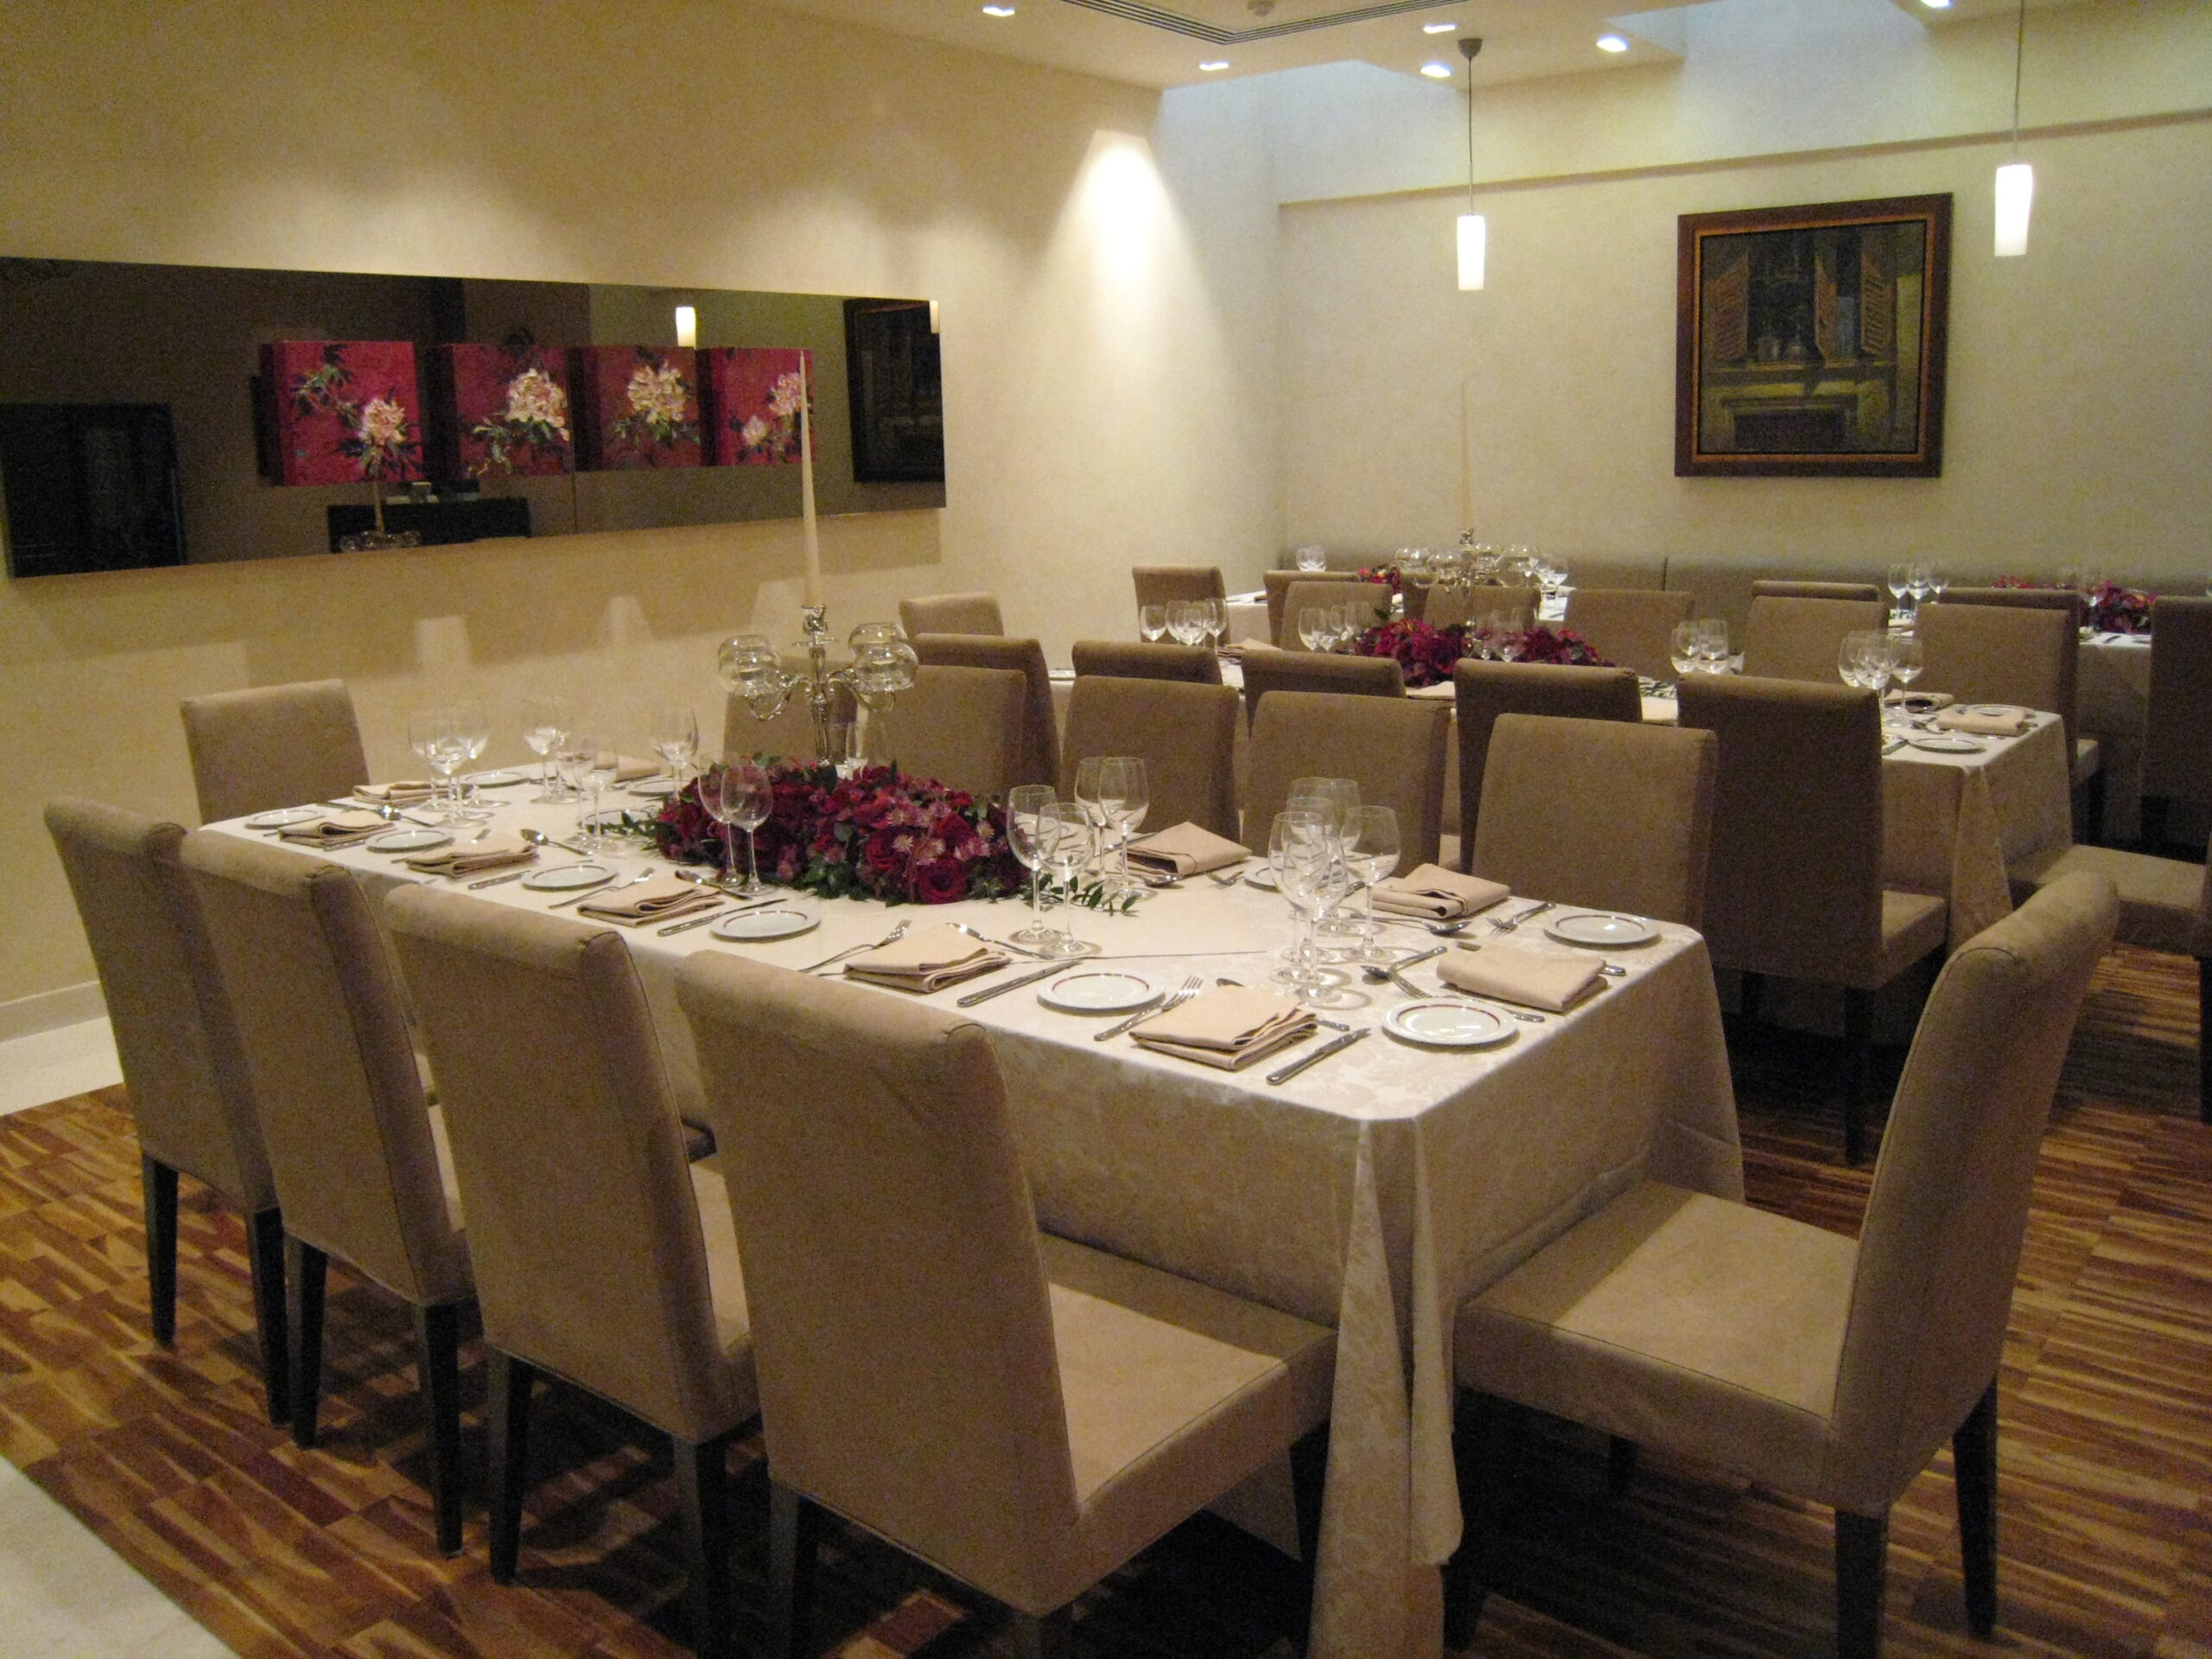 6th floor - Awafi Restaurant